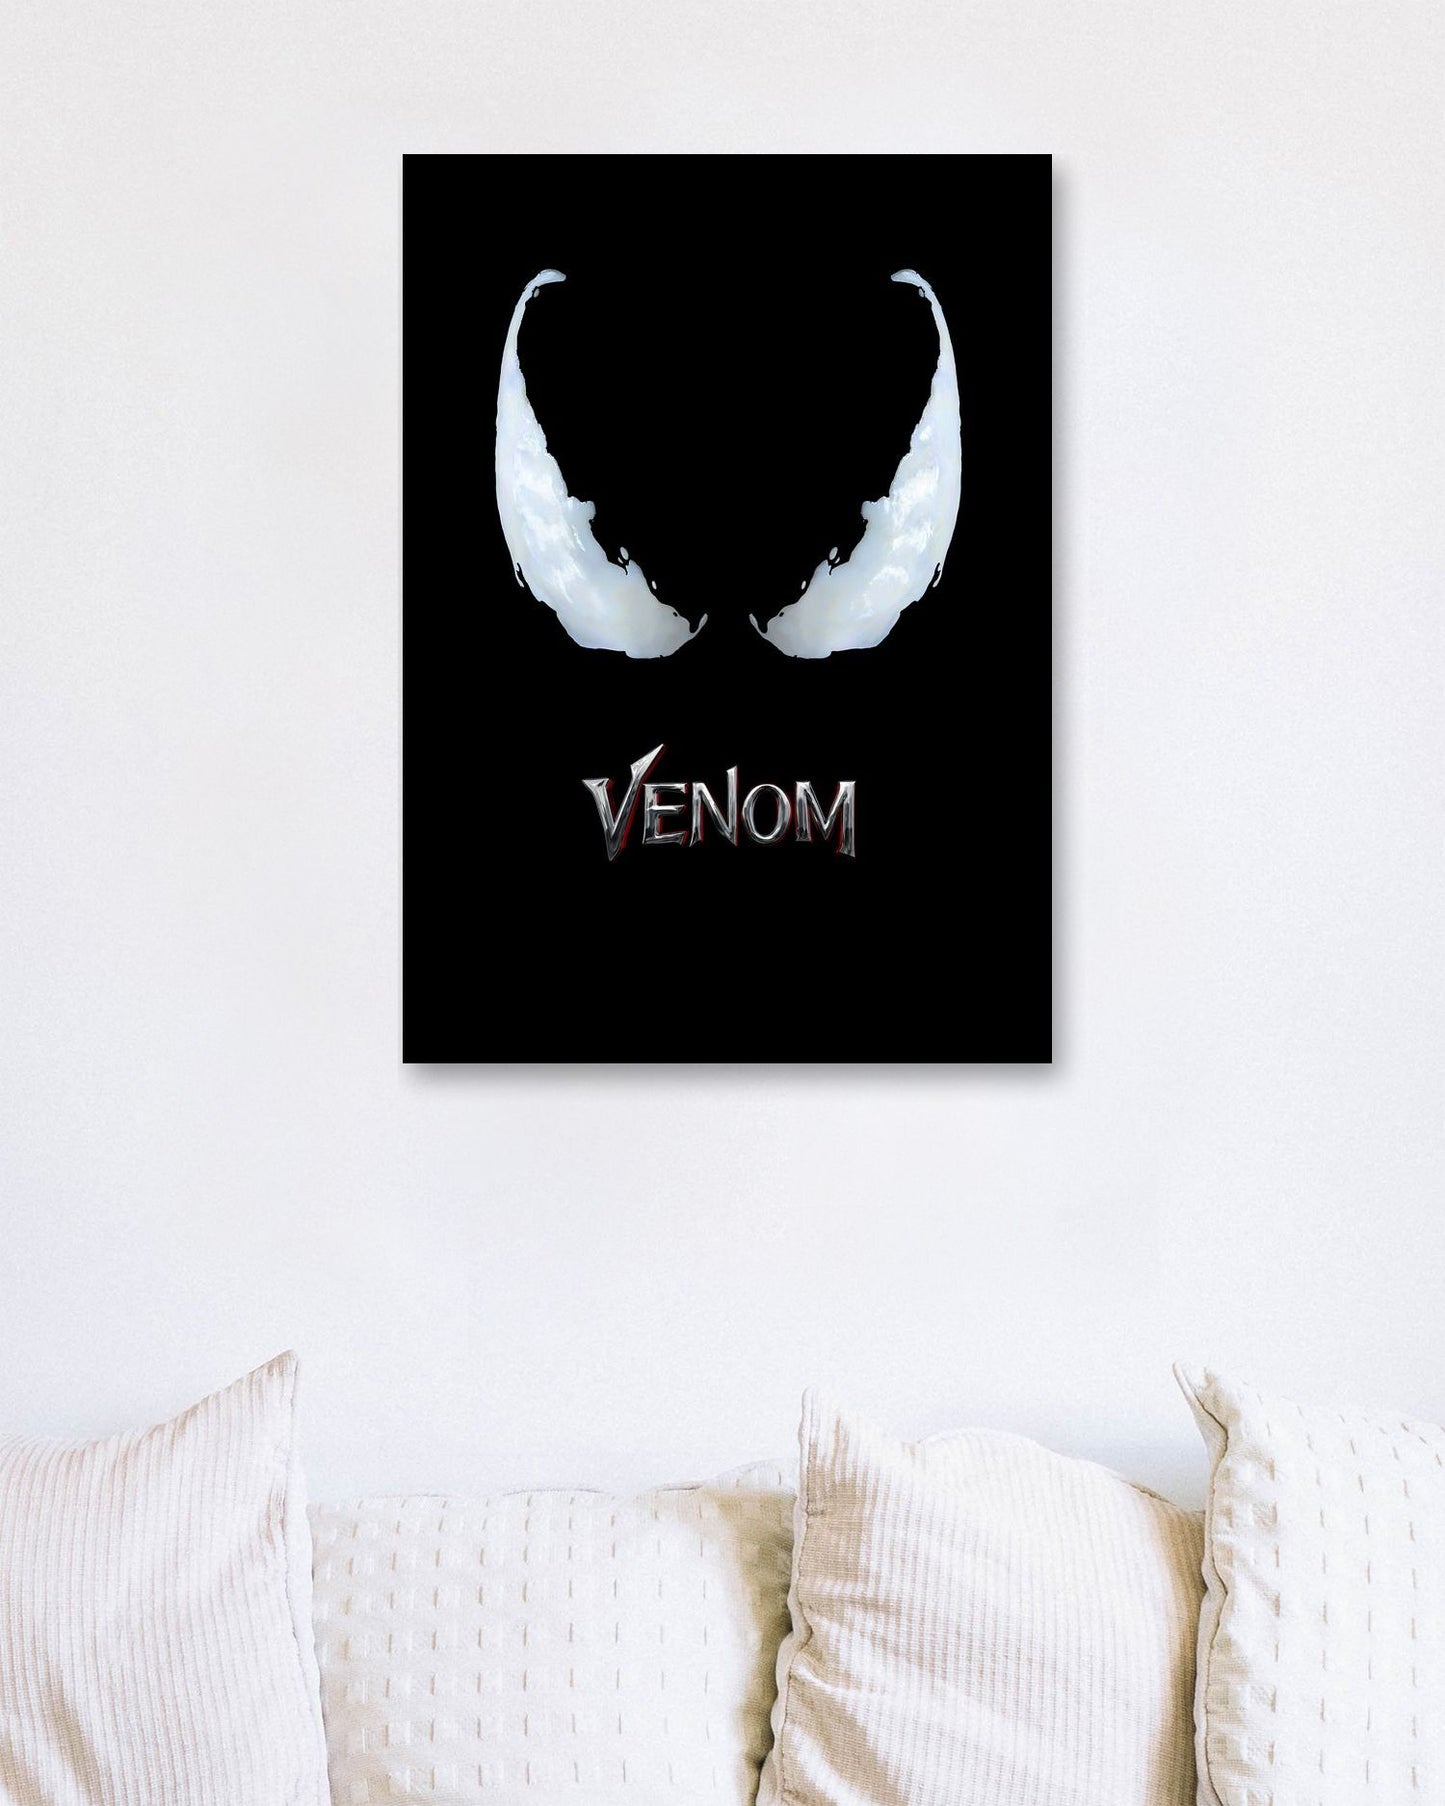 the eye of venom  - @thogigio